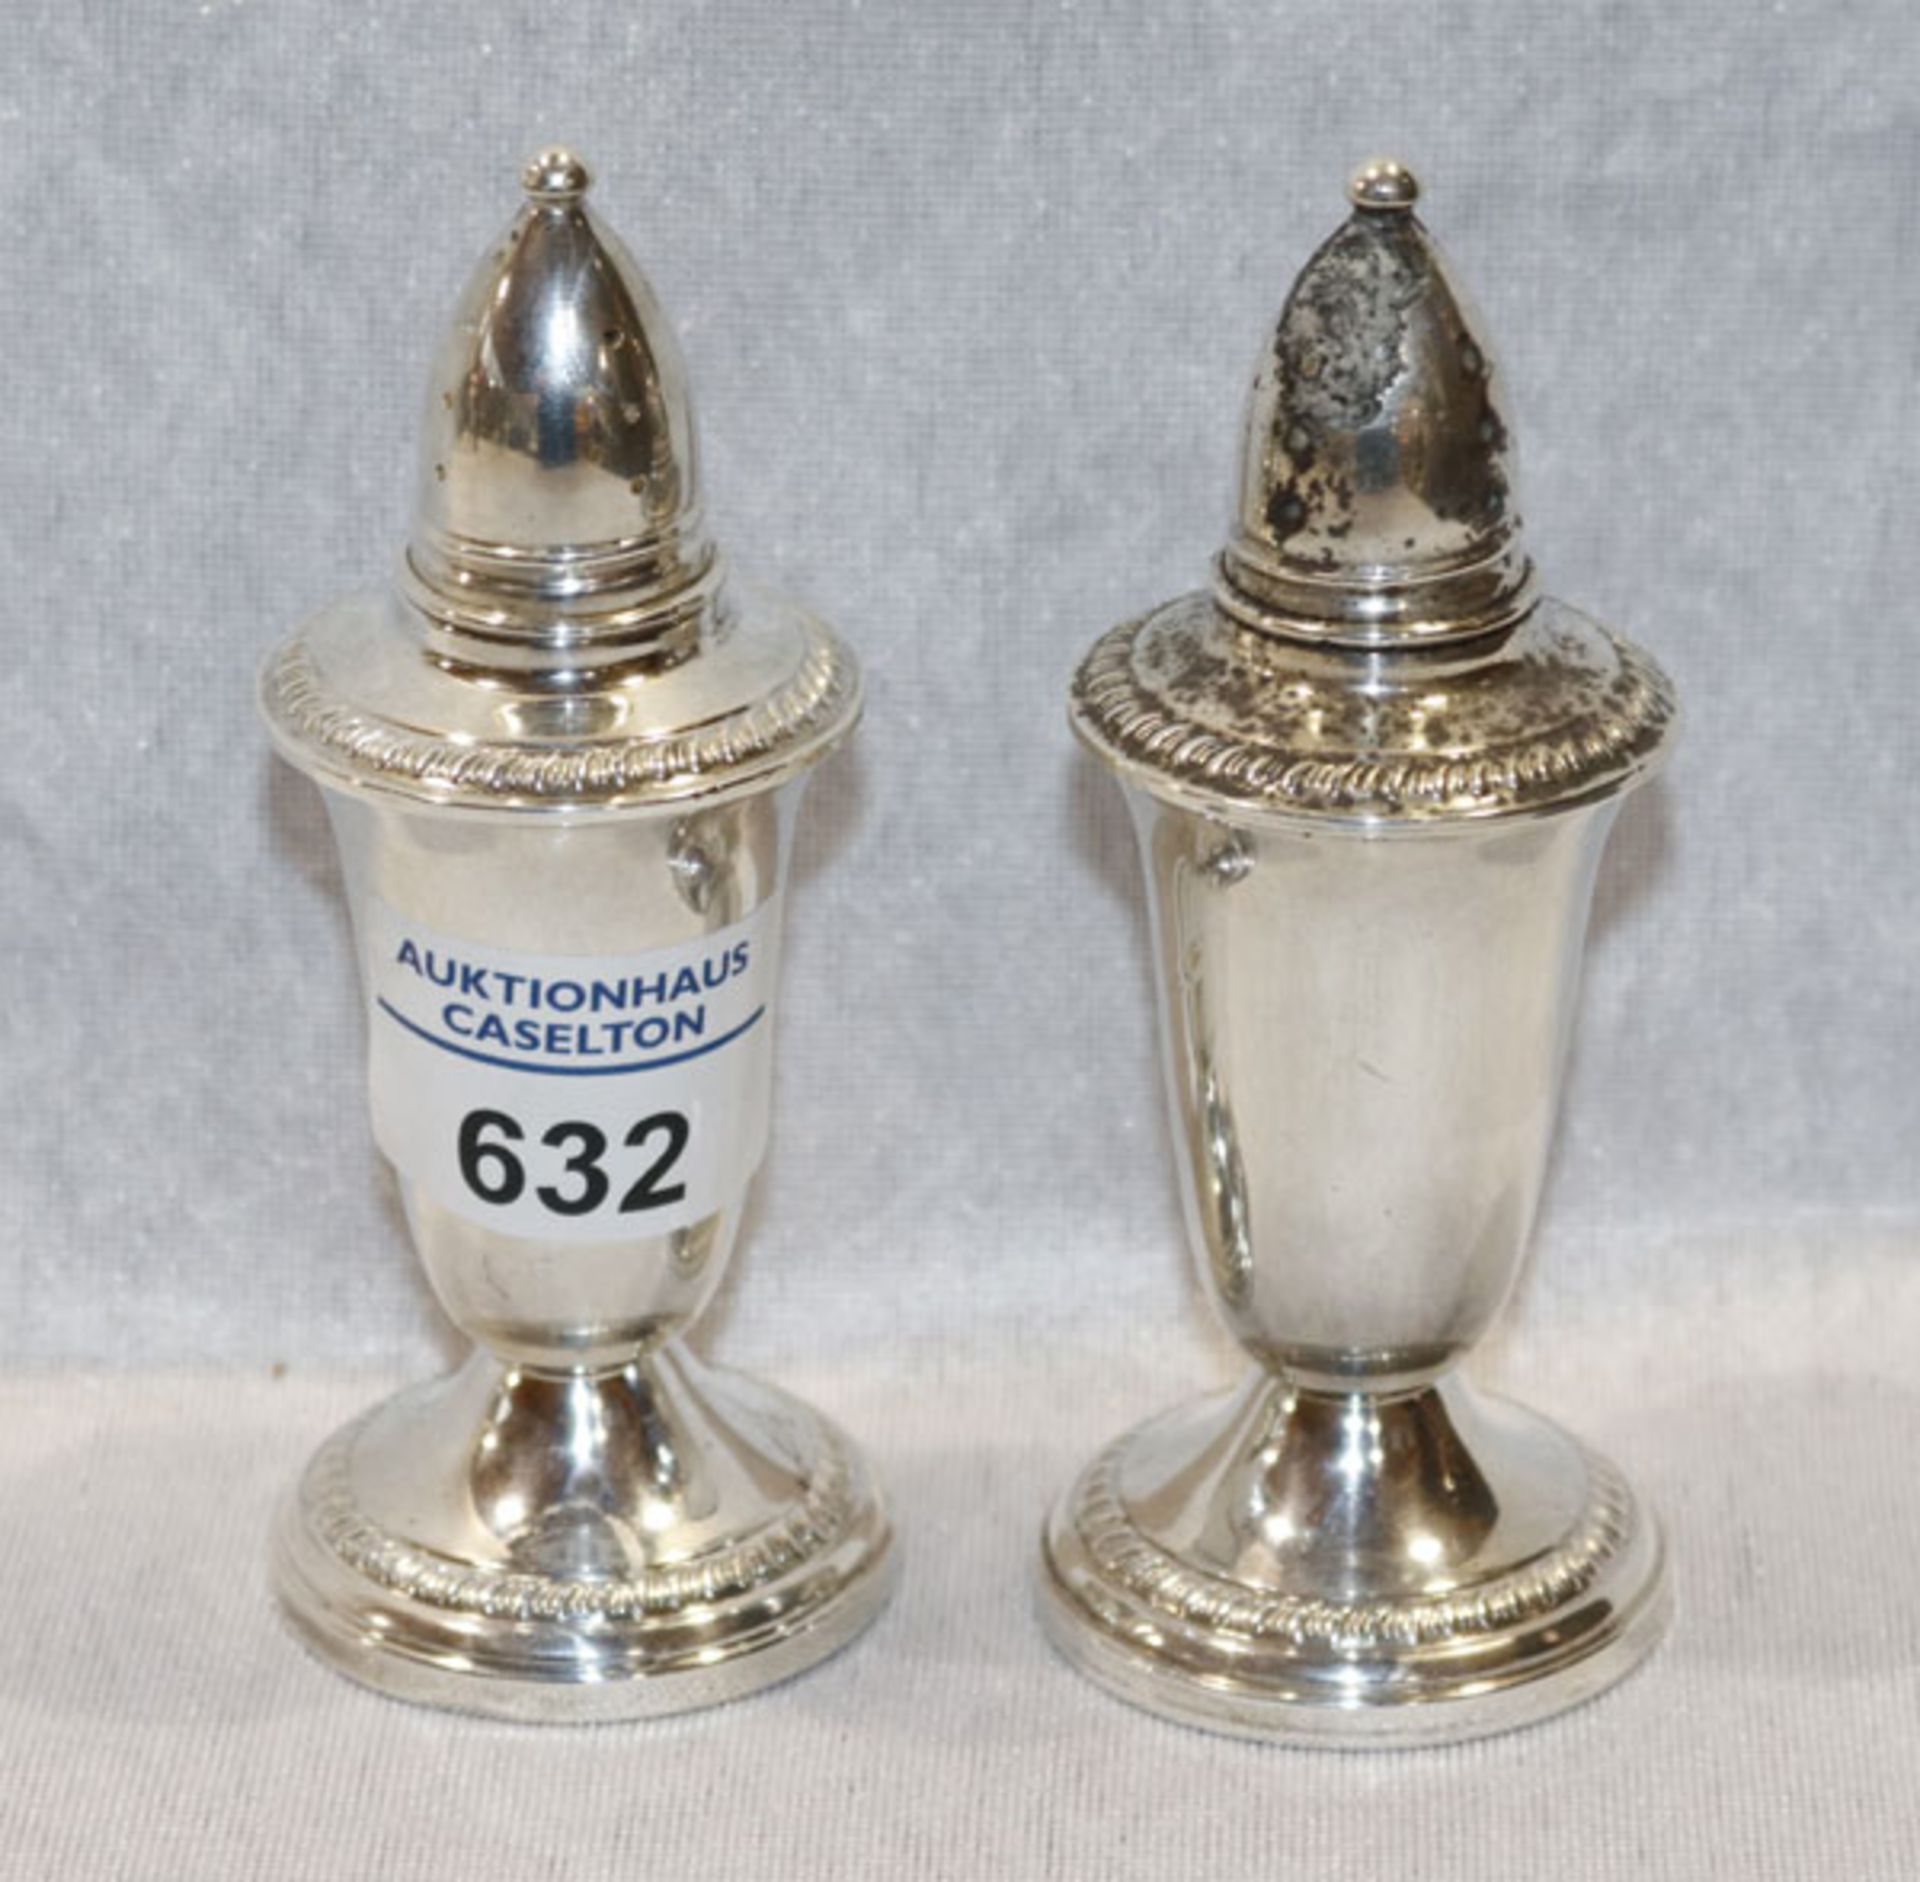 Salz- und Pfeffer-Streuer, 925 Silber, gefüllt, H 11 cm, D 5 cm, Gebrauchsspuren, leicht bestossen